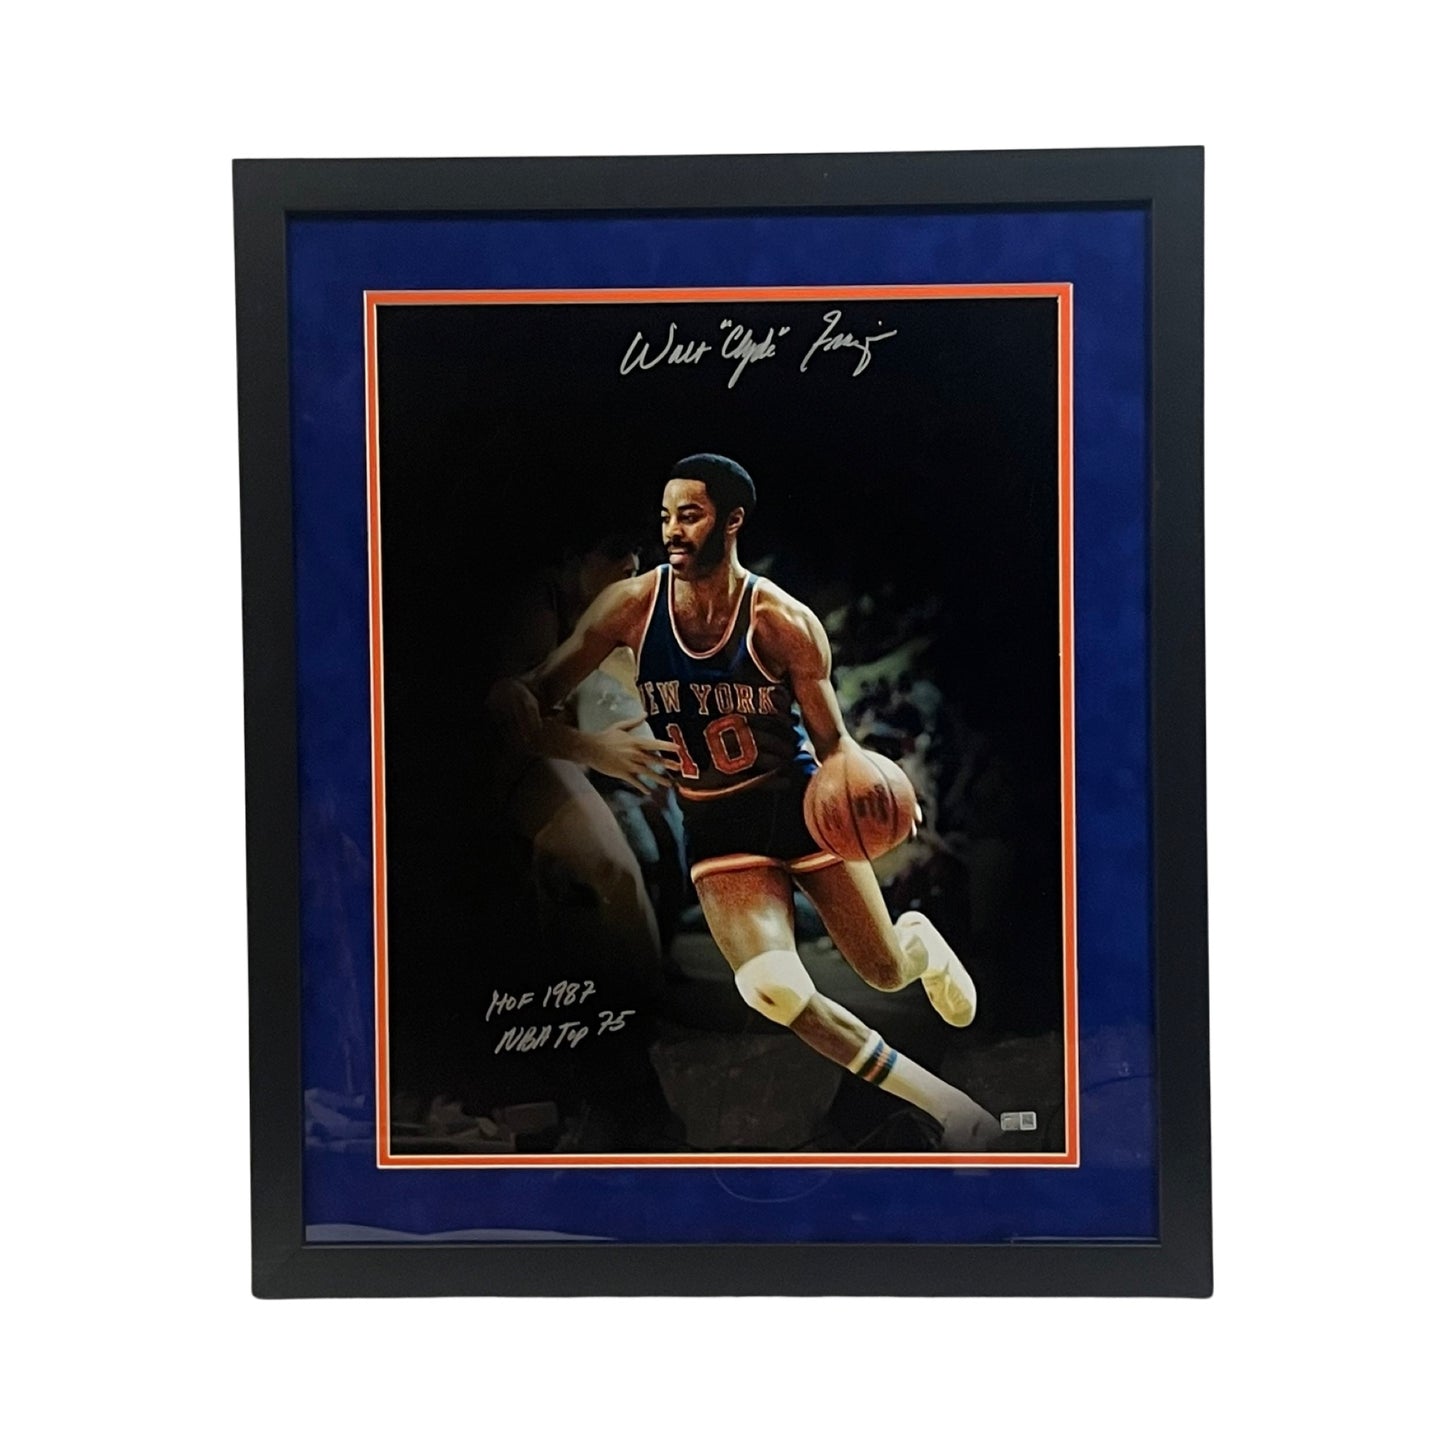 Walt “Clyde” Frazier Autographed New York Knicks Framed 16x20 “HOF 1987, NBA Top 75” Inscriptions Steiner CX